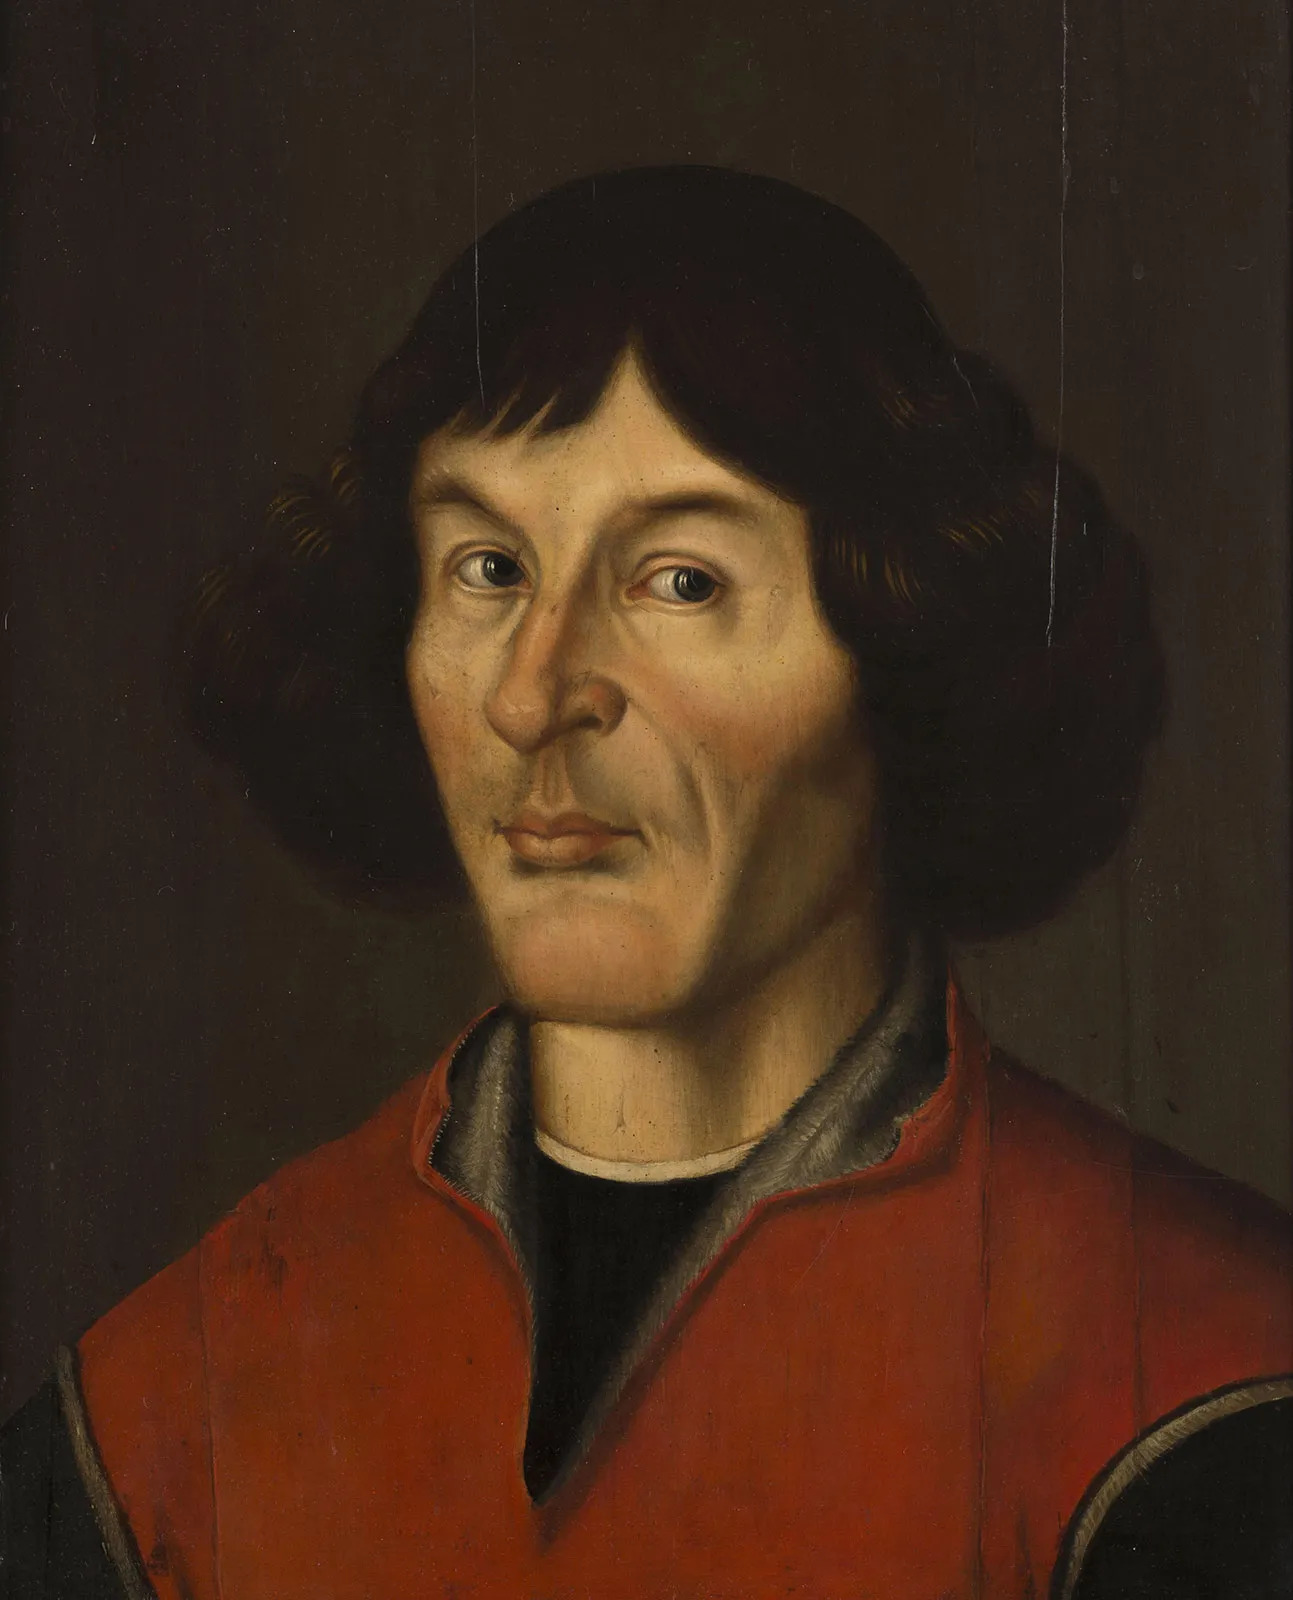 Nicolaus-Copernicus-portrait-Torun britannica.jpg